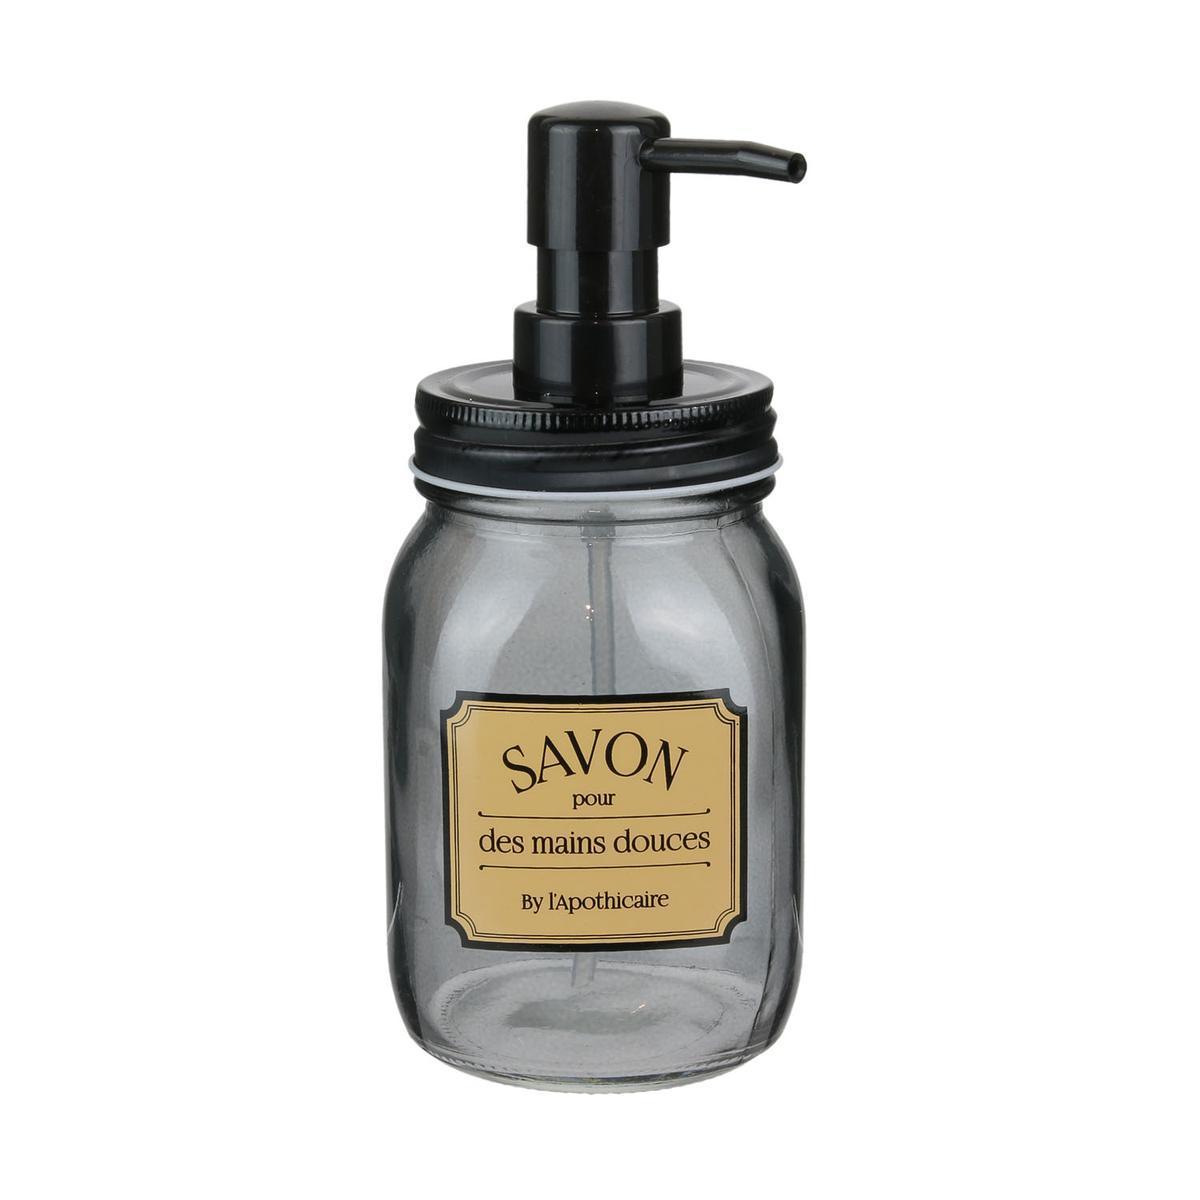 Distributeur de savon style Apothicaire - 51 cl - Noir, gris, marron - HOME DECO FACTORY